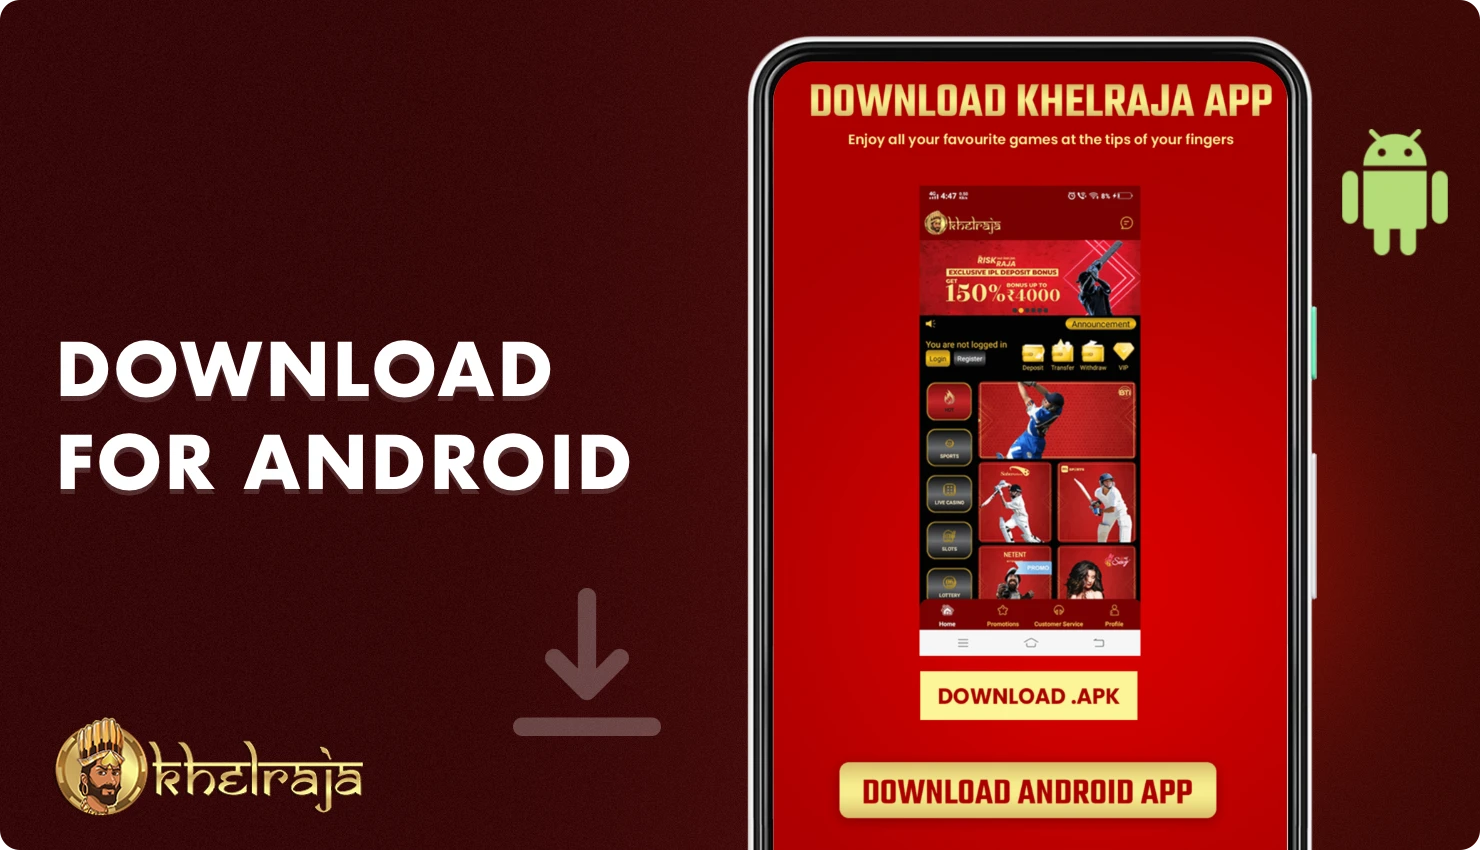 Android के लिए Khelraja ऐप डाउनलोड करने के लिए कंपनी की आधिकारिक वेबसाइट पर जाएं